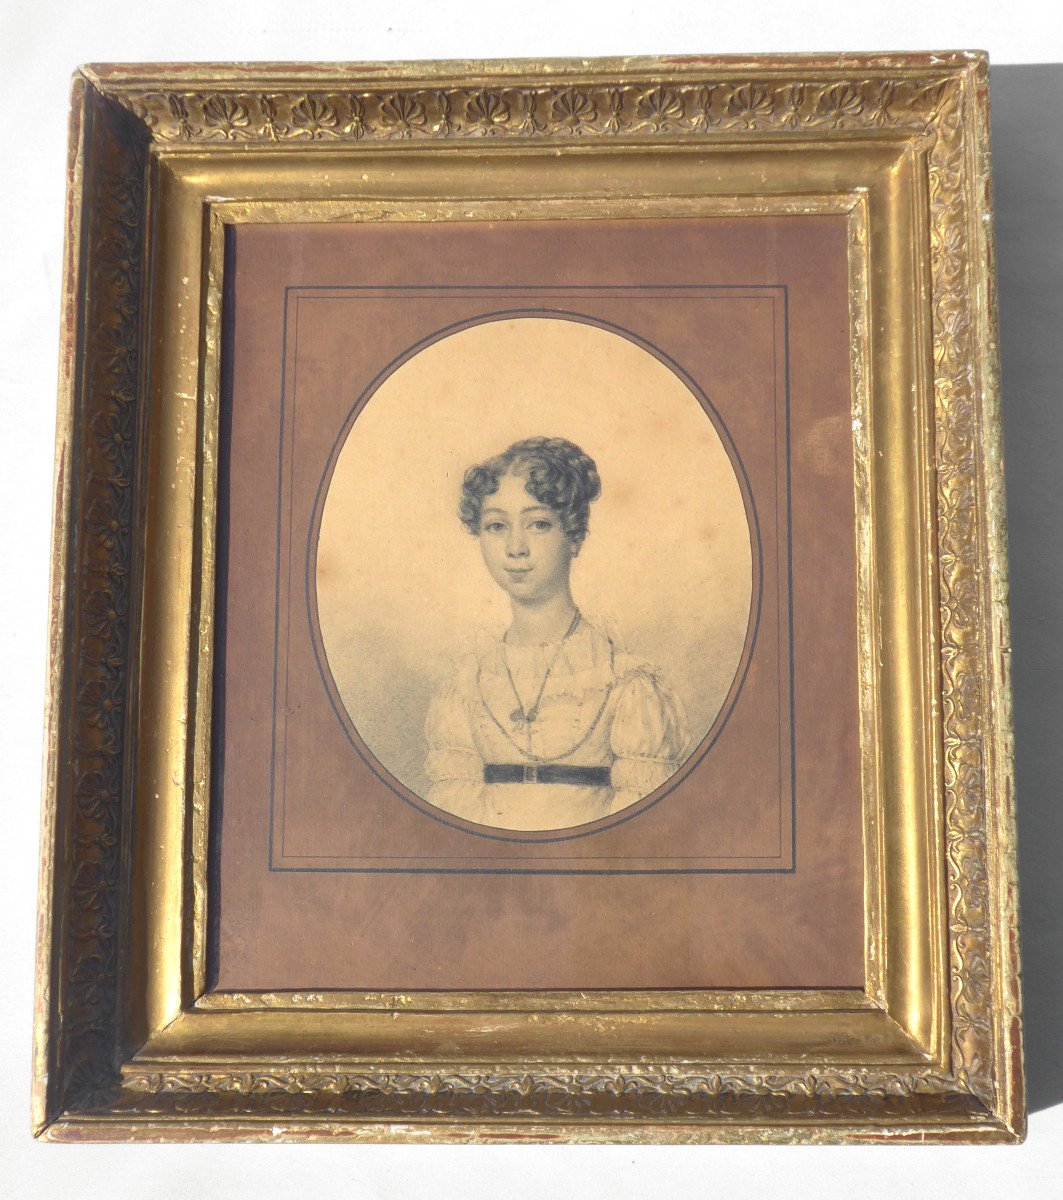 Portrait Au Fusain De Jeune Fille époque 1820 , Style De Leopold Boilly , Encadrement En Bois & Stuc Doré , Dessin Epoque Restauration